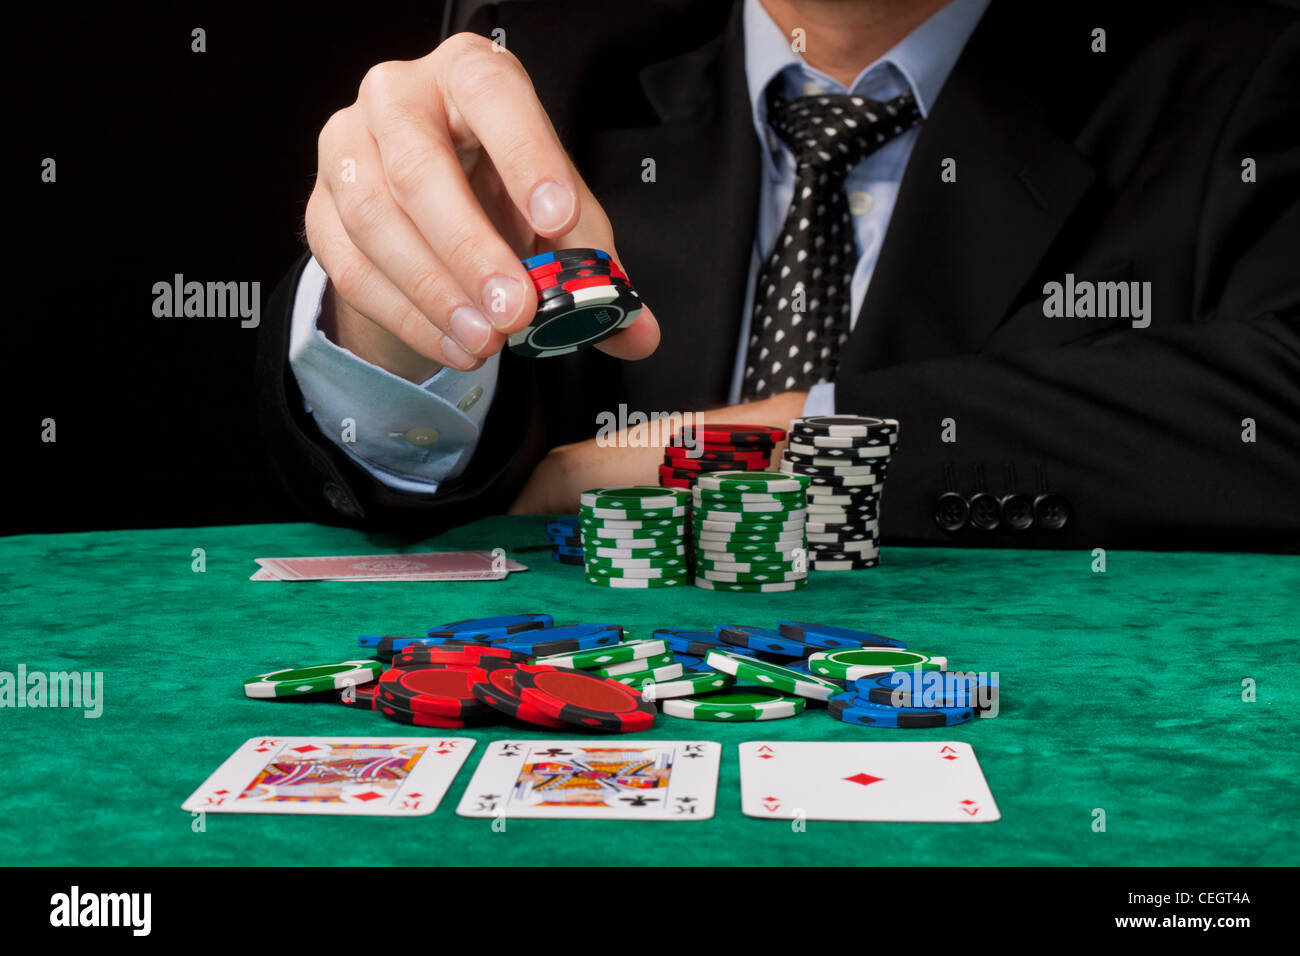 Un homme d'affaires placer un pari dans un Texas hold 'em poker jeu. Banque D'Images